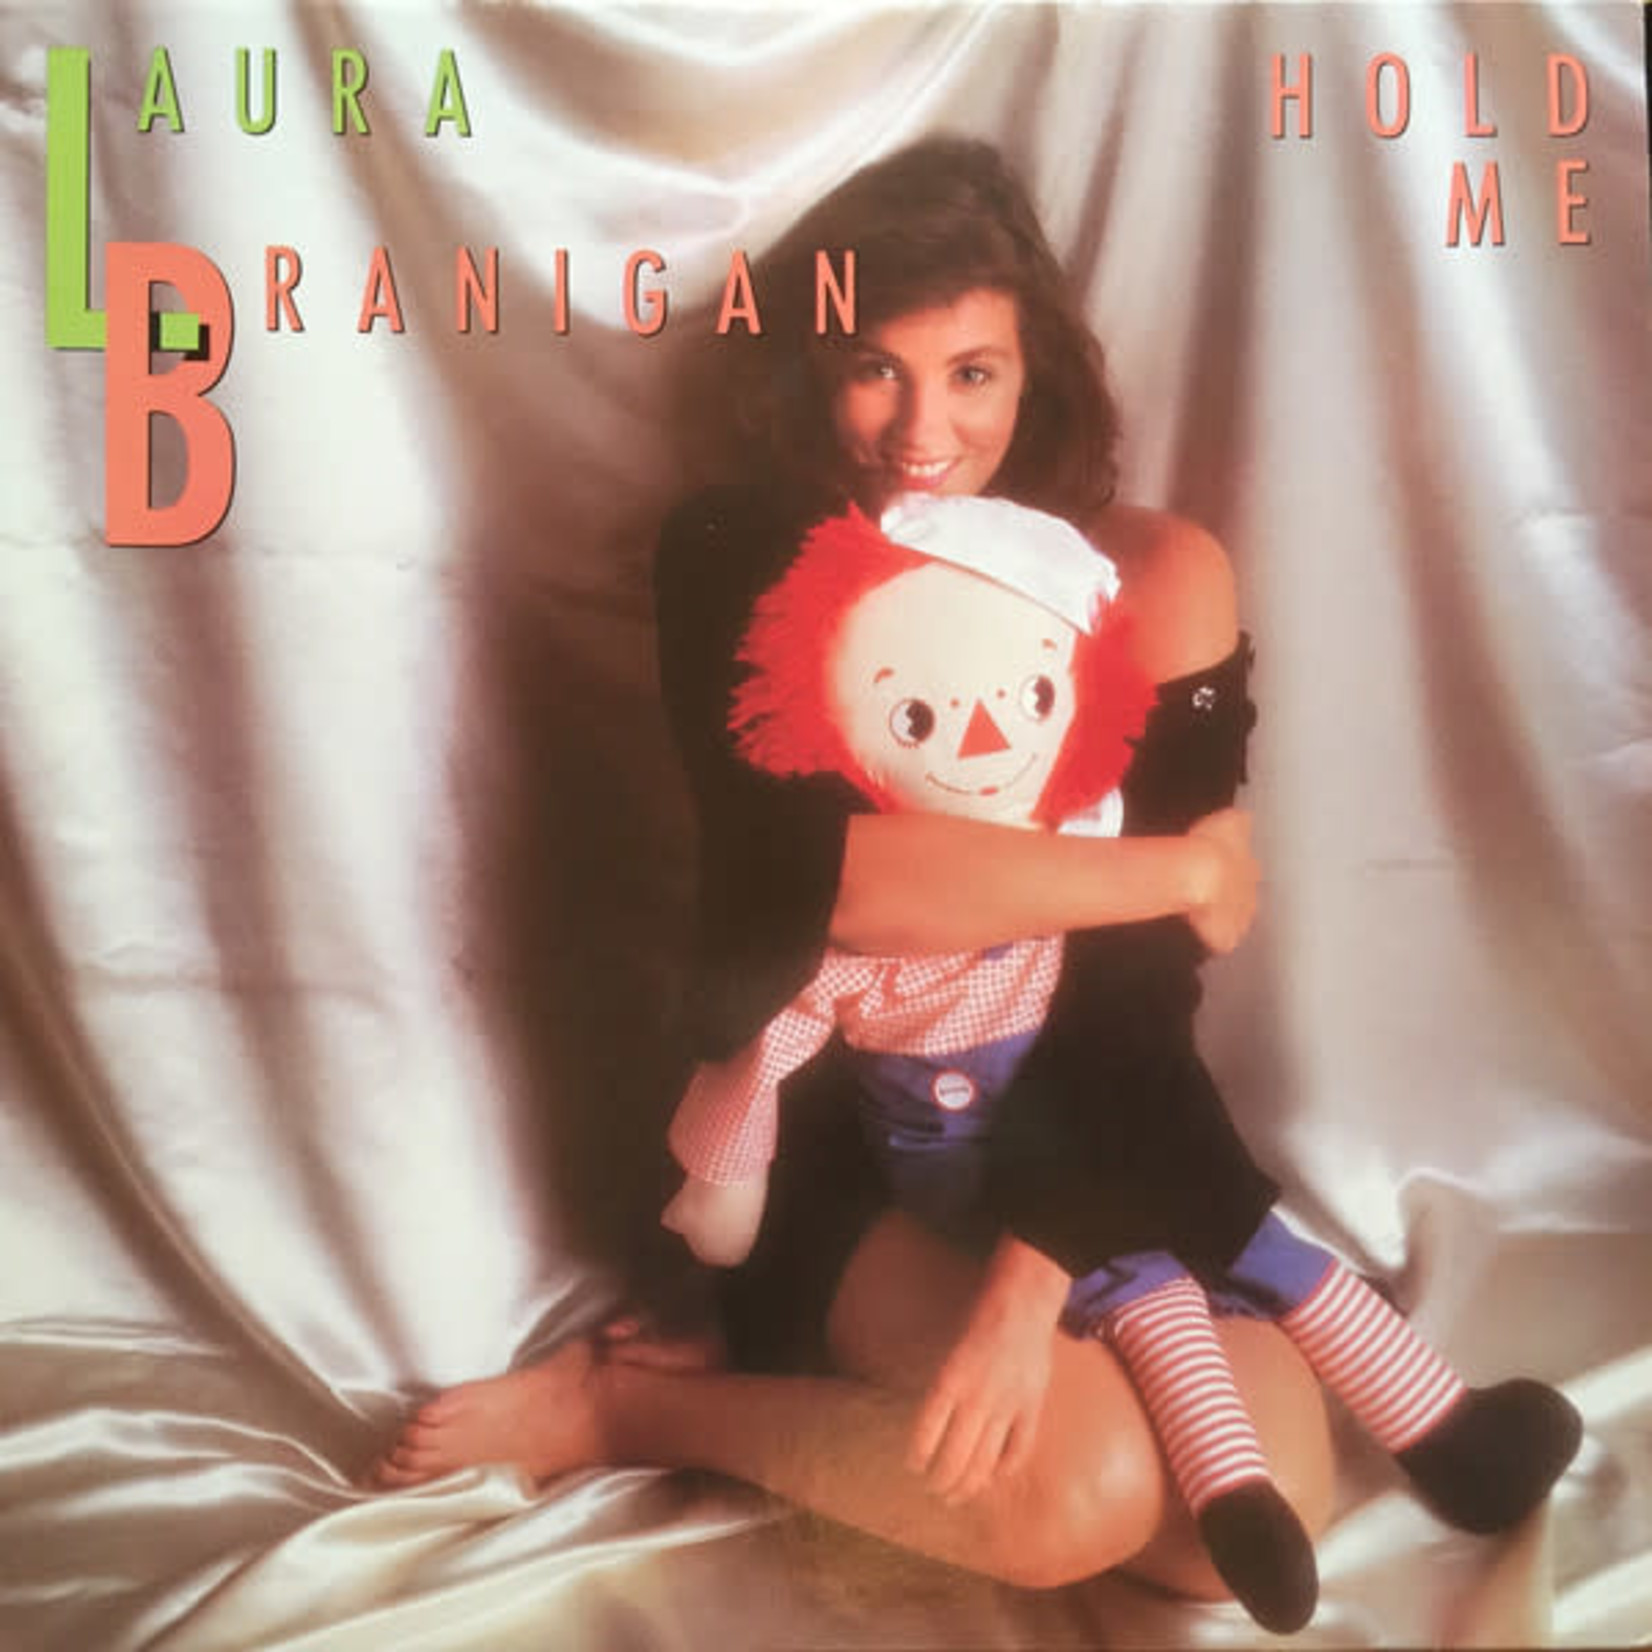 Laura Branigan Laura Branigan – Hold Me (VG, 1985, LP, Atlantic – 78 12651, Canada)